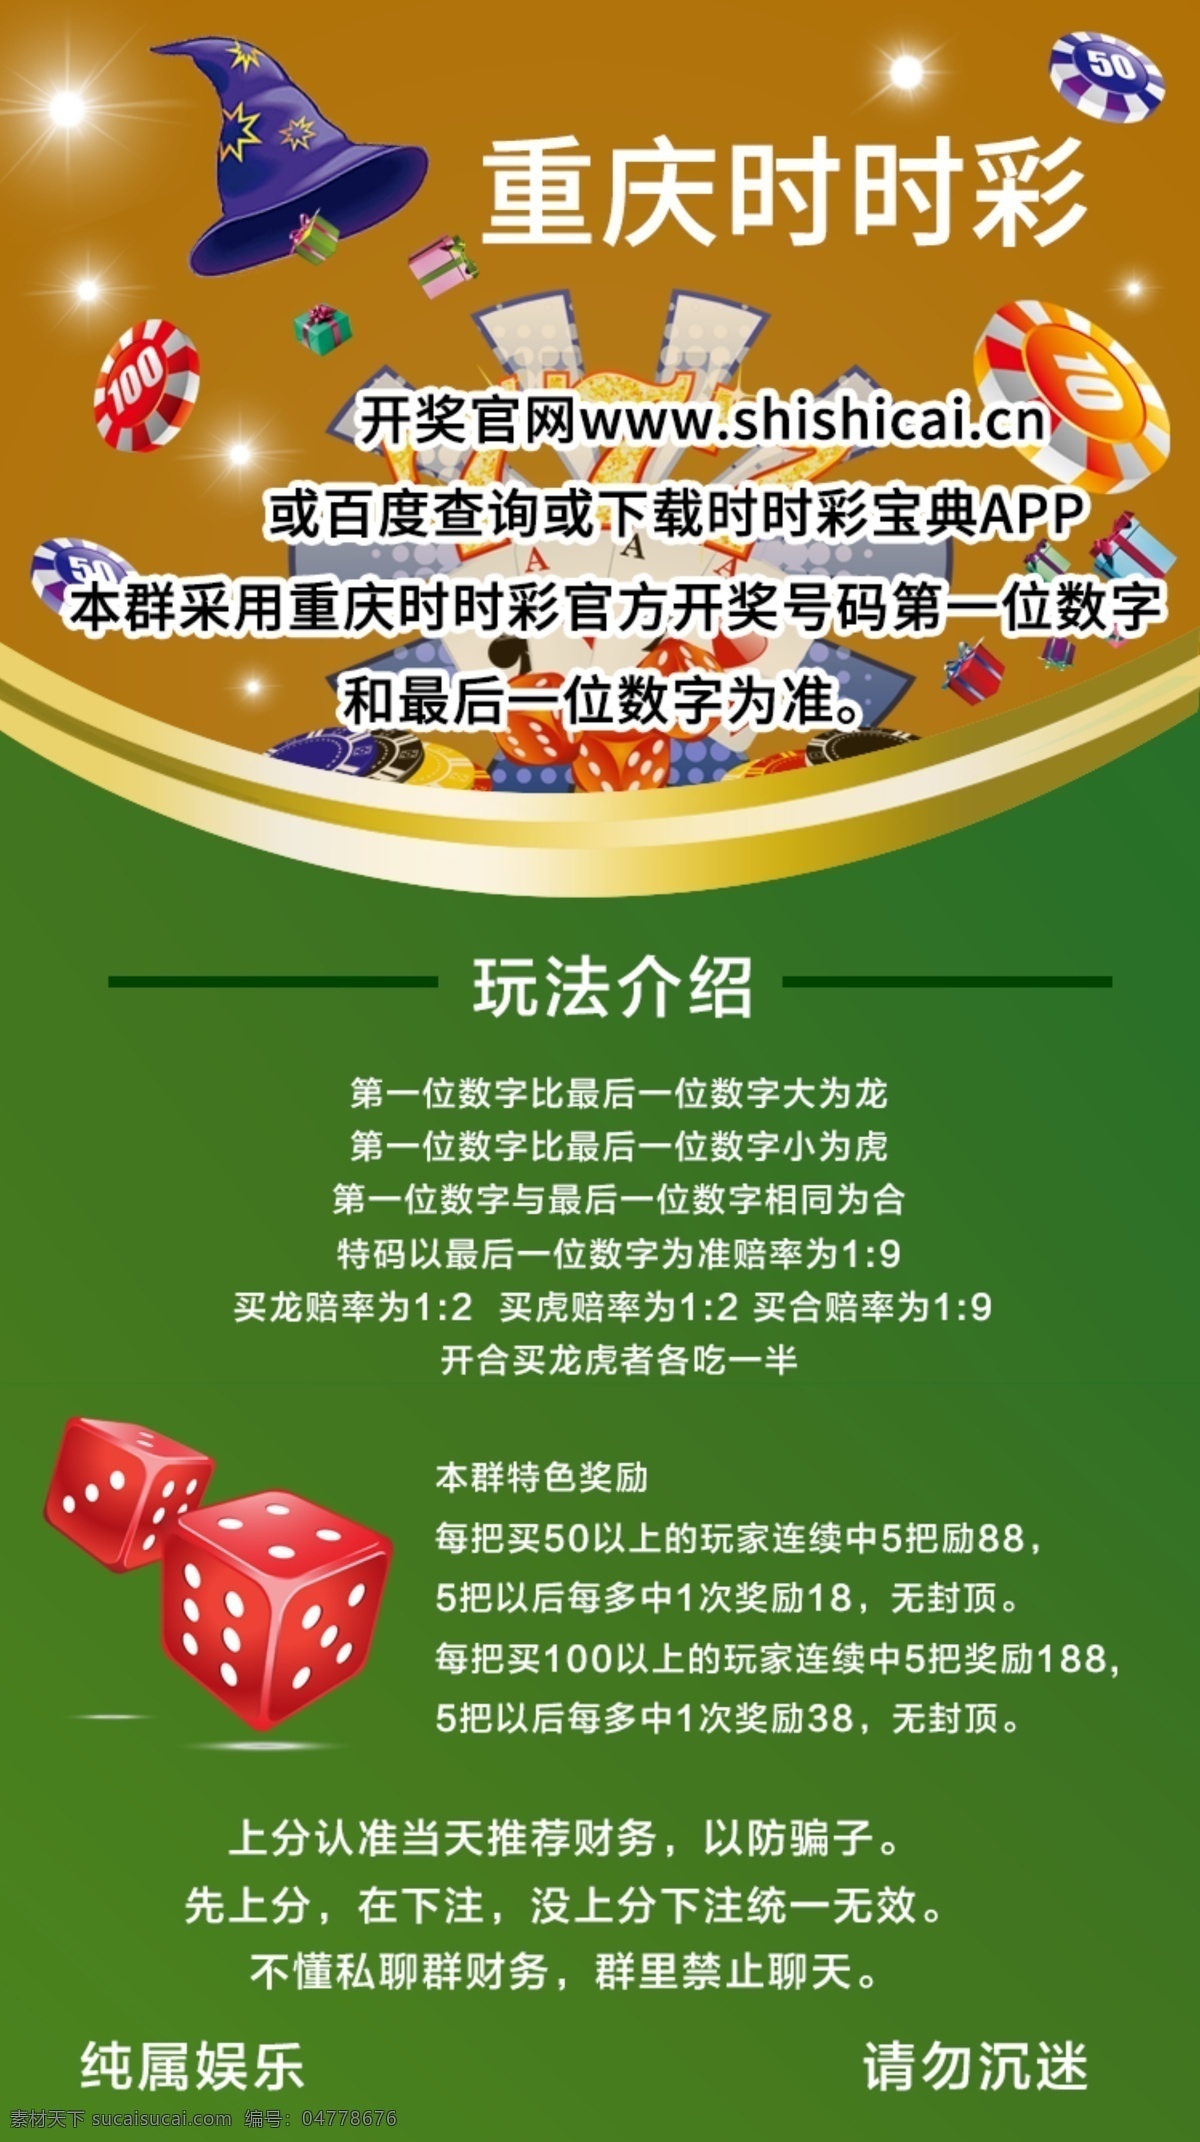 重庆时时彩 时时彩 骰子 魔法帽 光源 扑克牌 绿色 黄色 dm宣传单